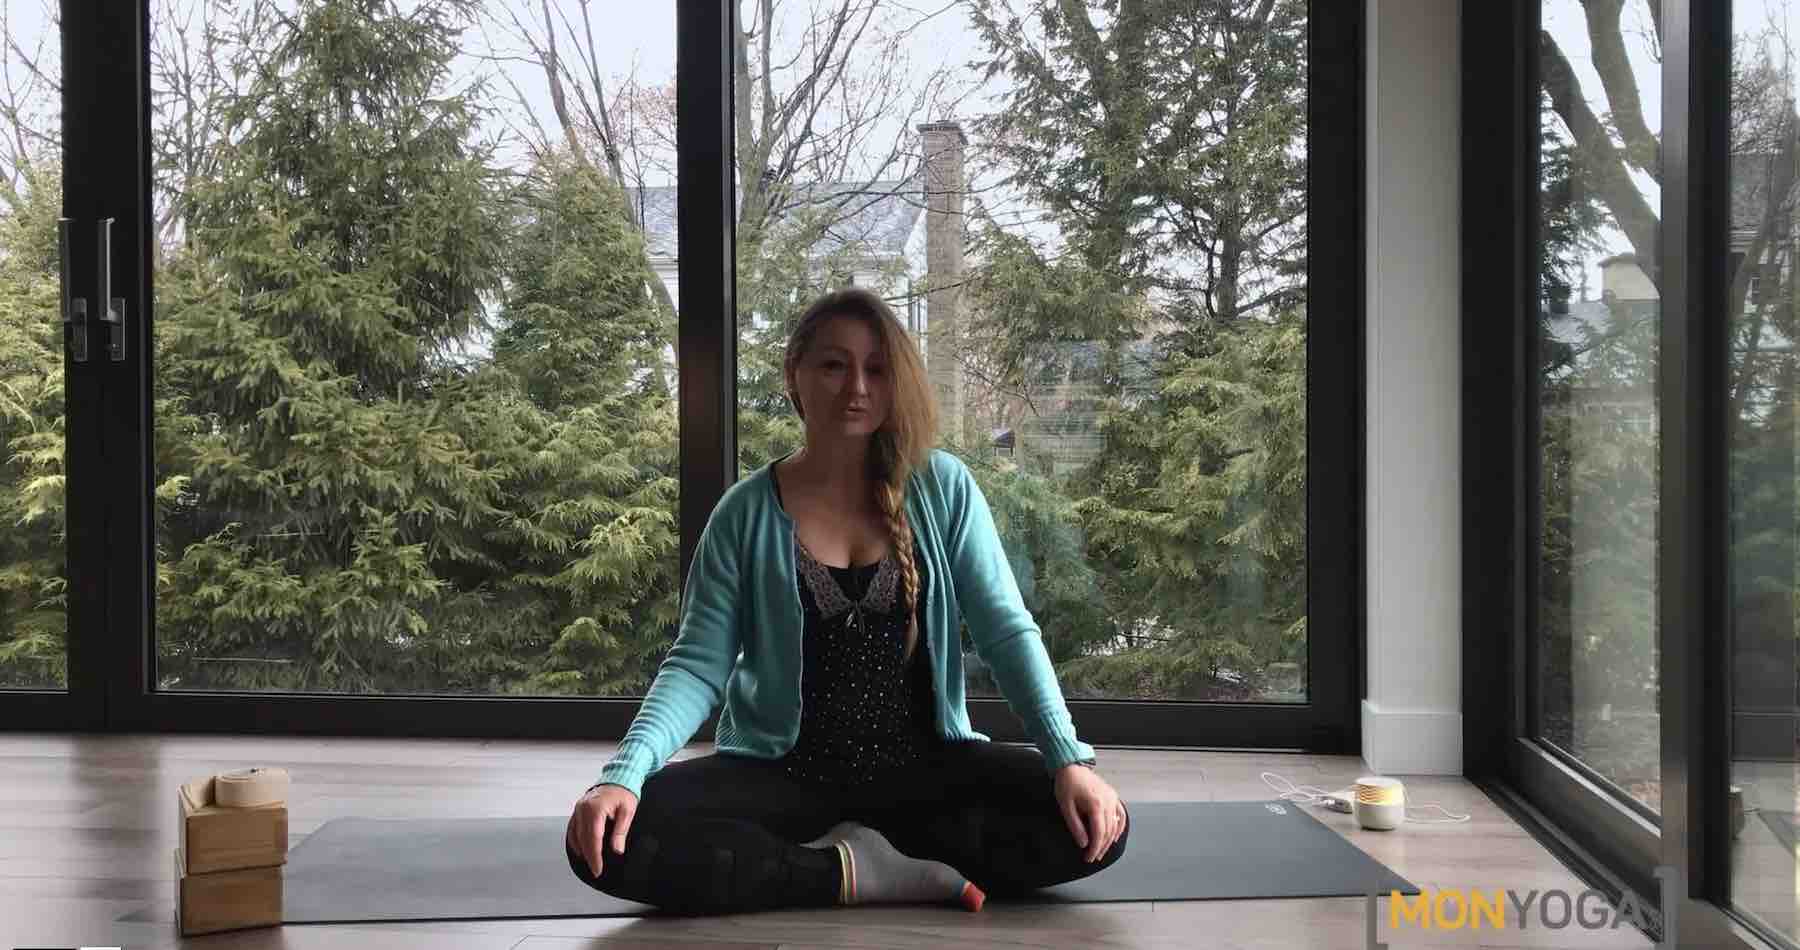 Comment faire son studio de yoga à la maison avec le minimum de budget